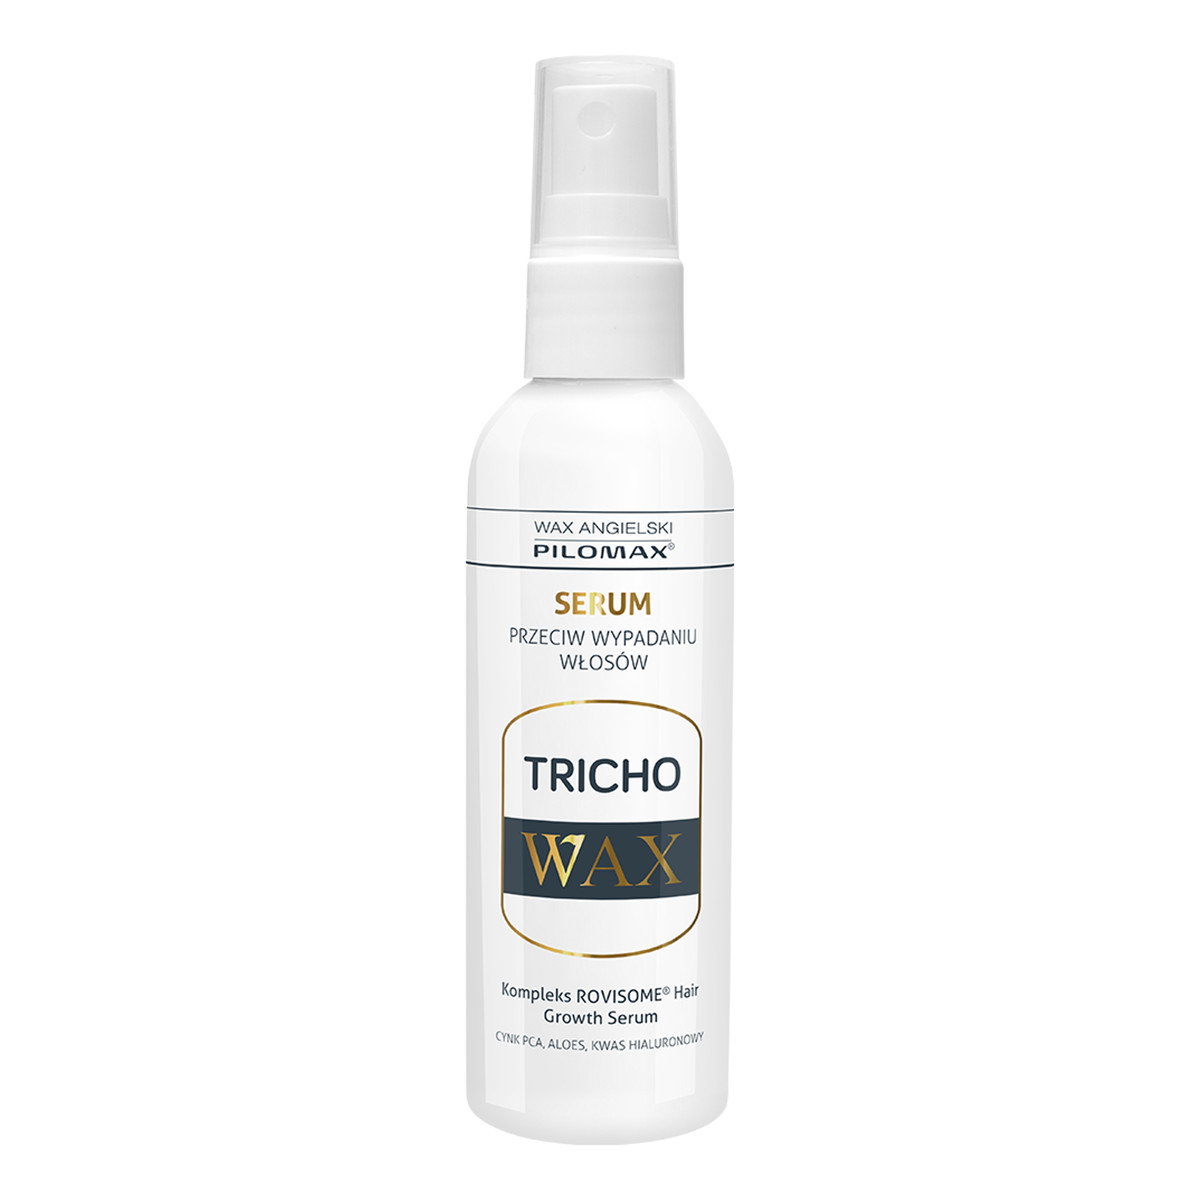 Pilomax Wax Tricho Serum przeciw wypadaniu włosów 100ml